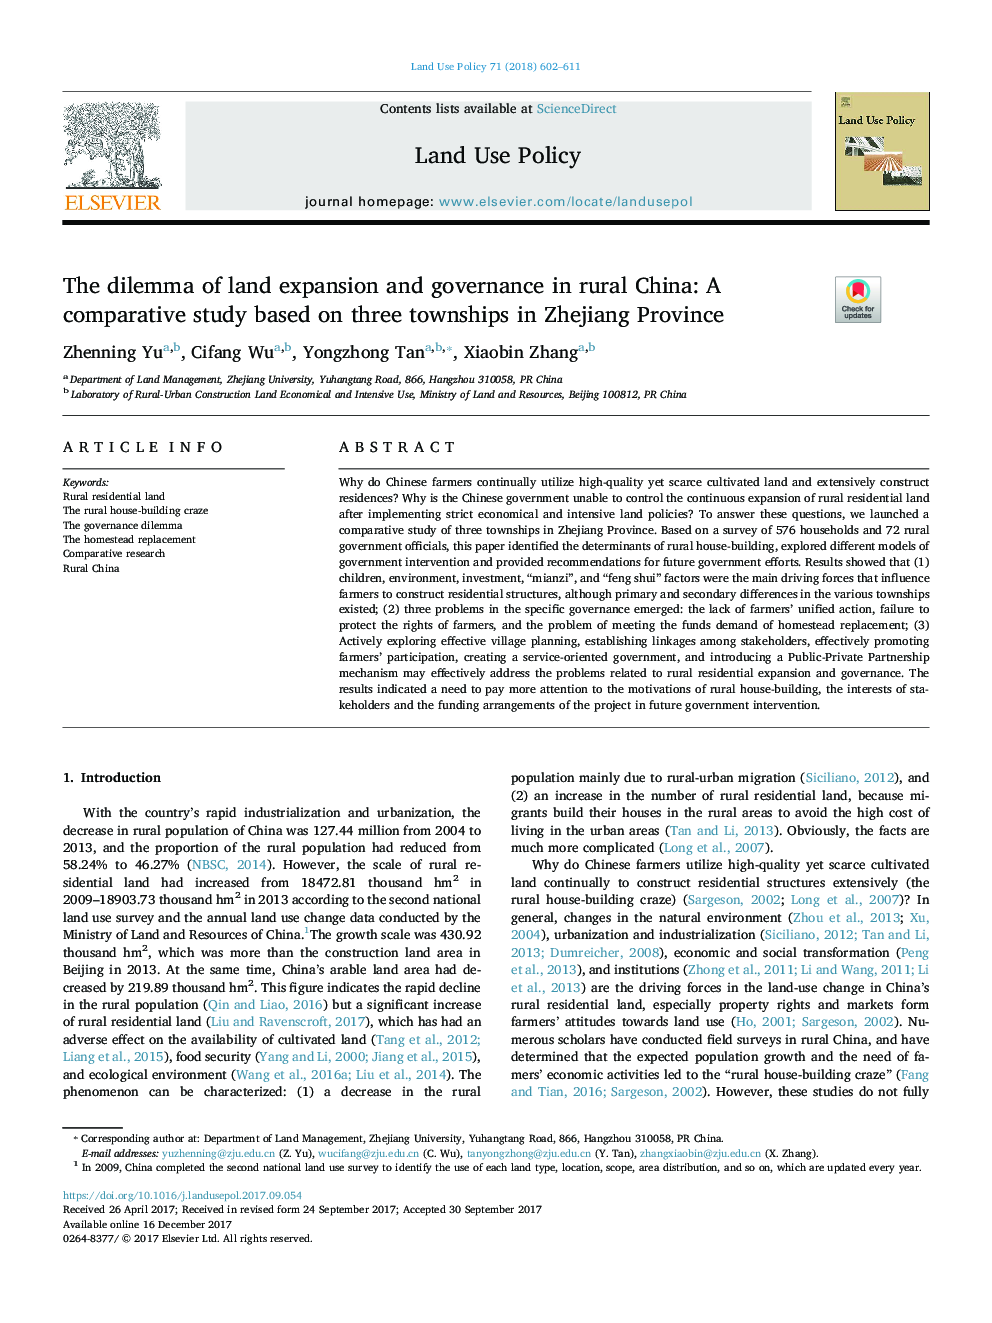 معضل گسترش زمین و حکومت در روستای چین: یک مطالعه مقایسه ای بر اساس سه شهر در استان ژجیانگ 